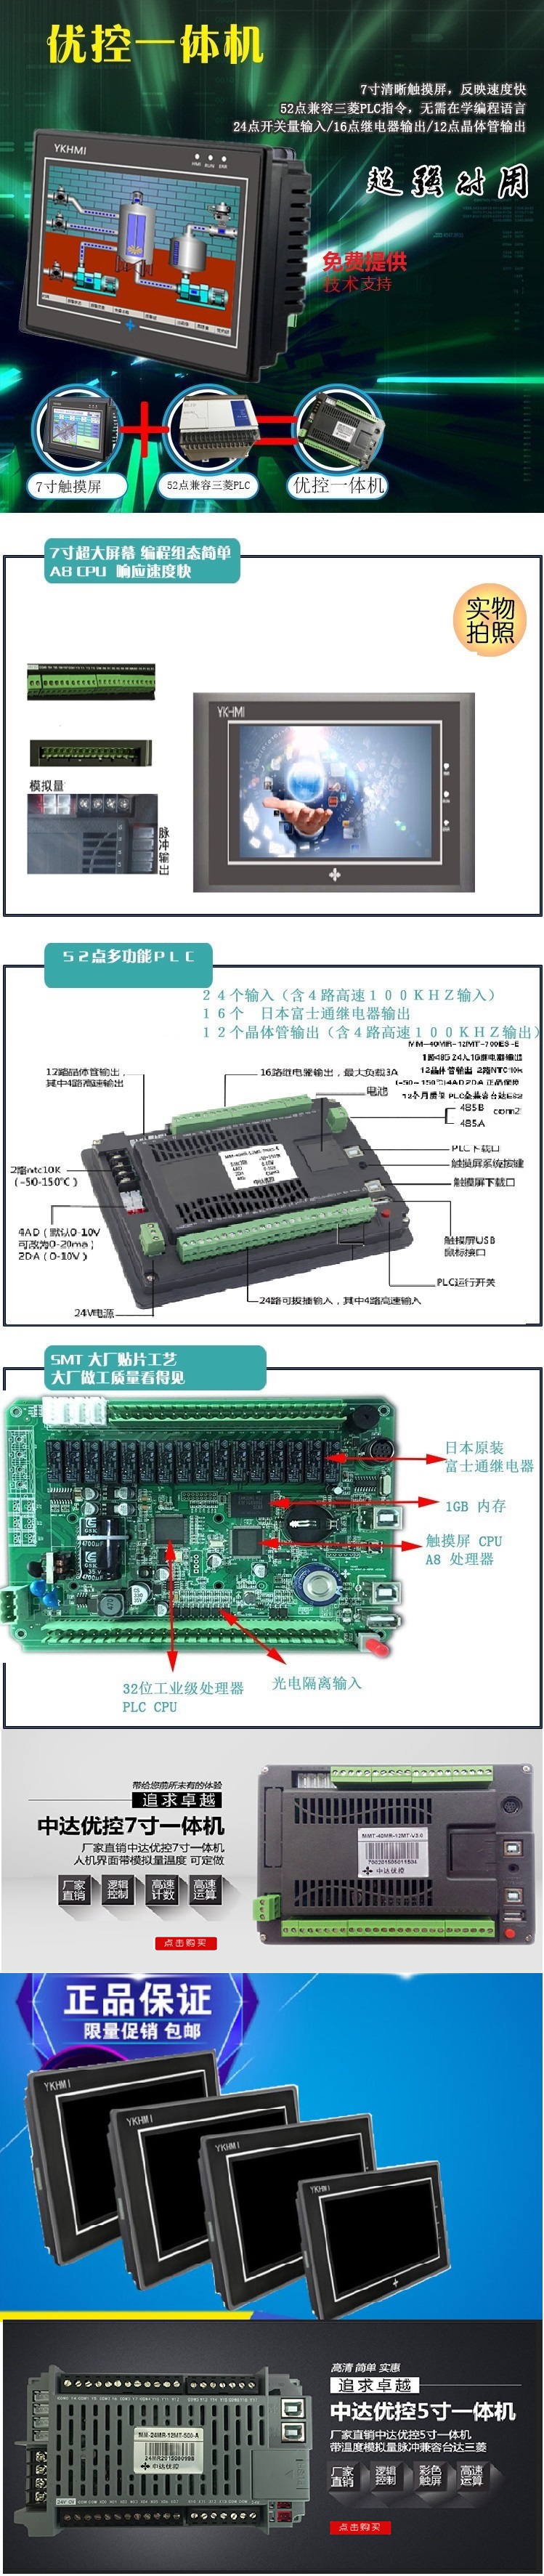 中达优控PLC触摸屏一体机MM-40MR-12MT-700ES-A 人机界面,触摸屏一体机,中达优控,HMI,YKHMI